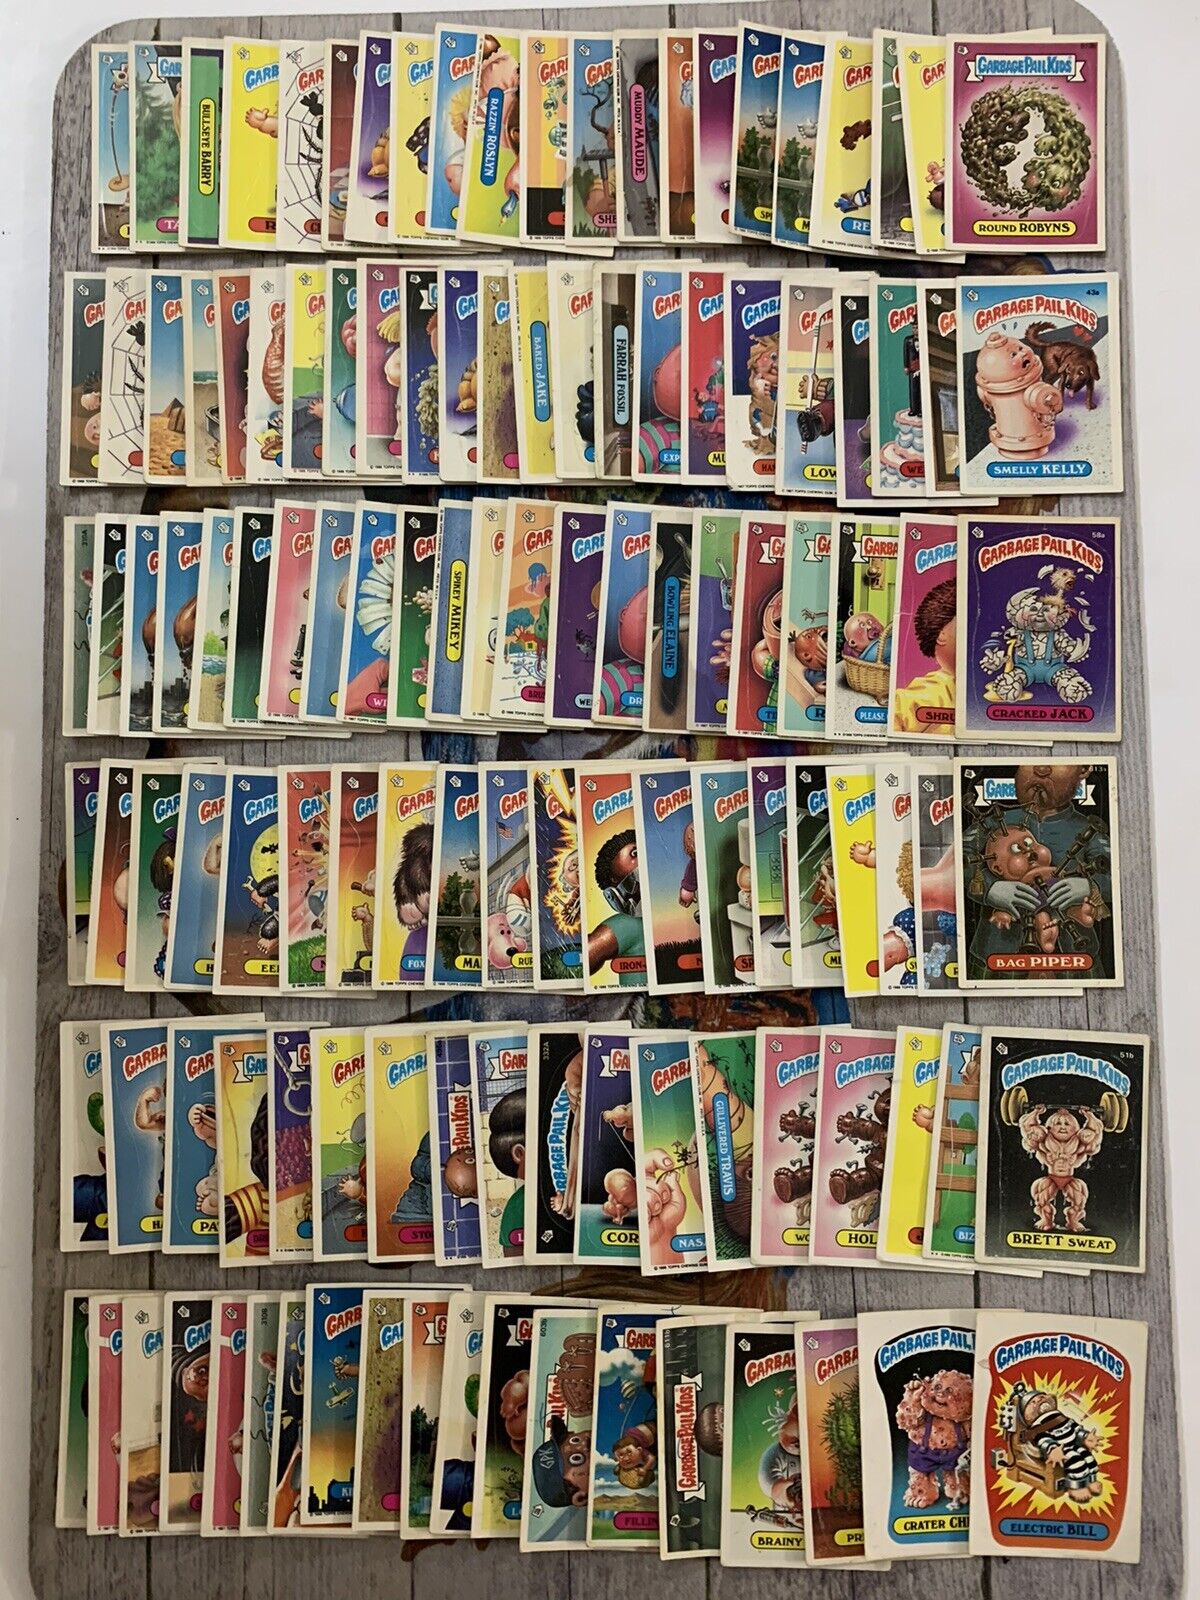 Garbage Pail Kids GPK Original Series Low To Rough Grade Lot Of 123 Cards